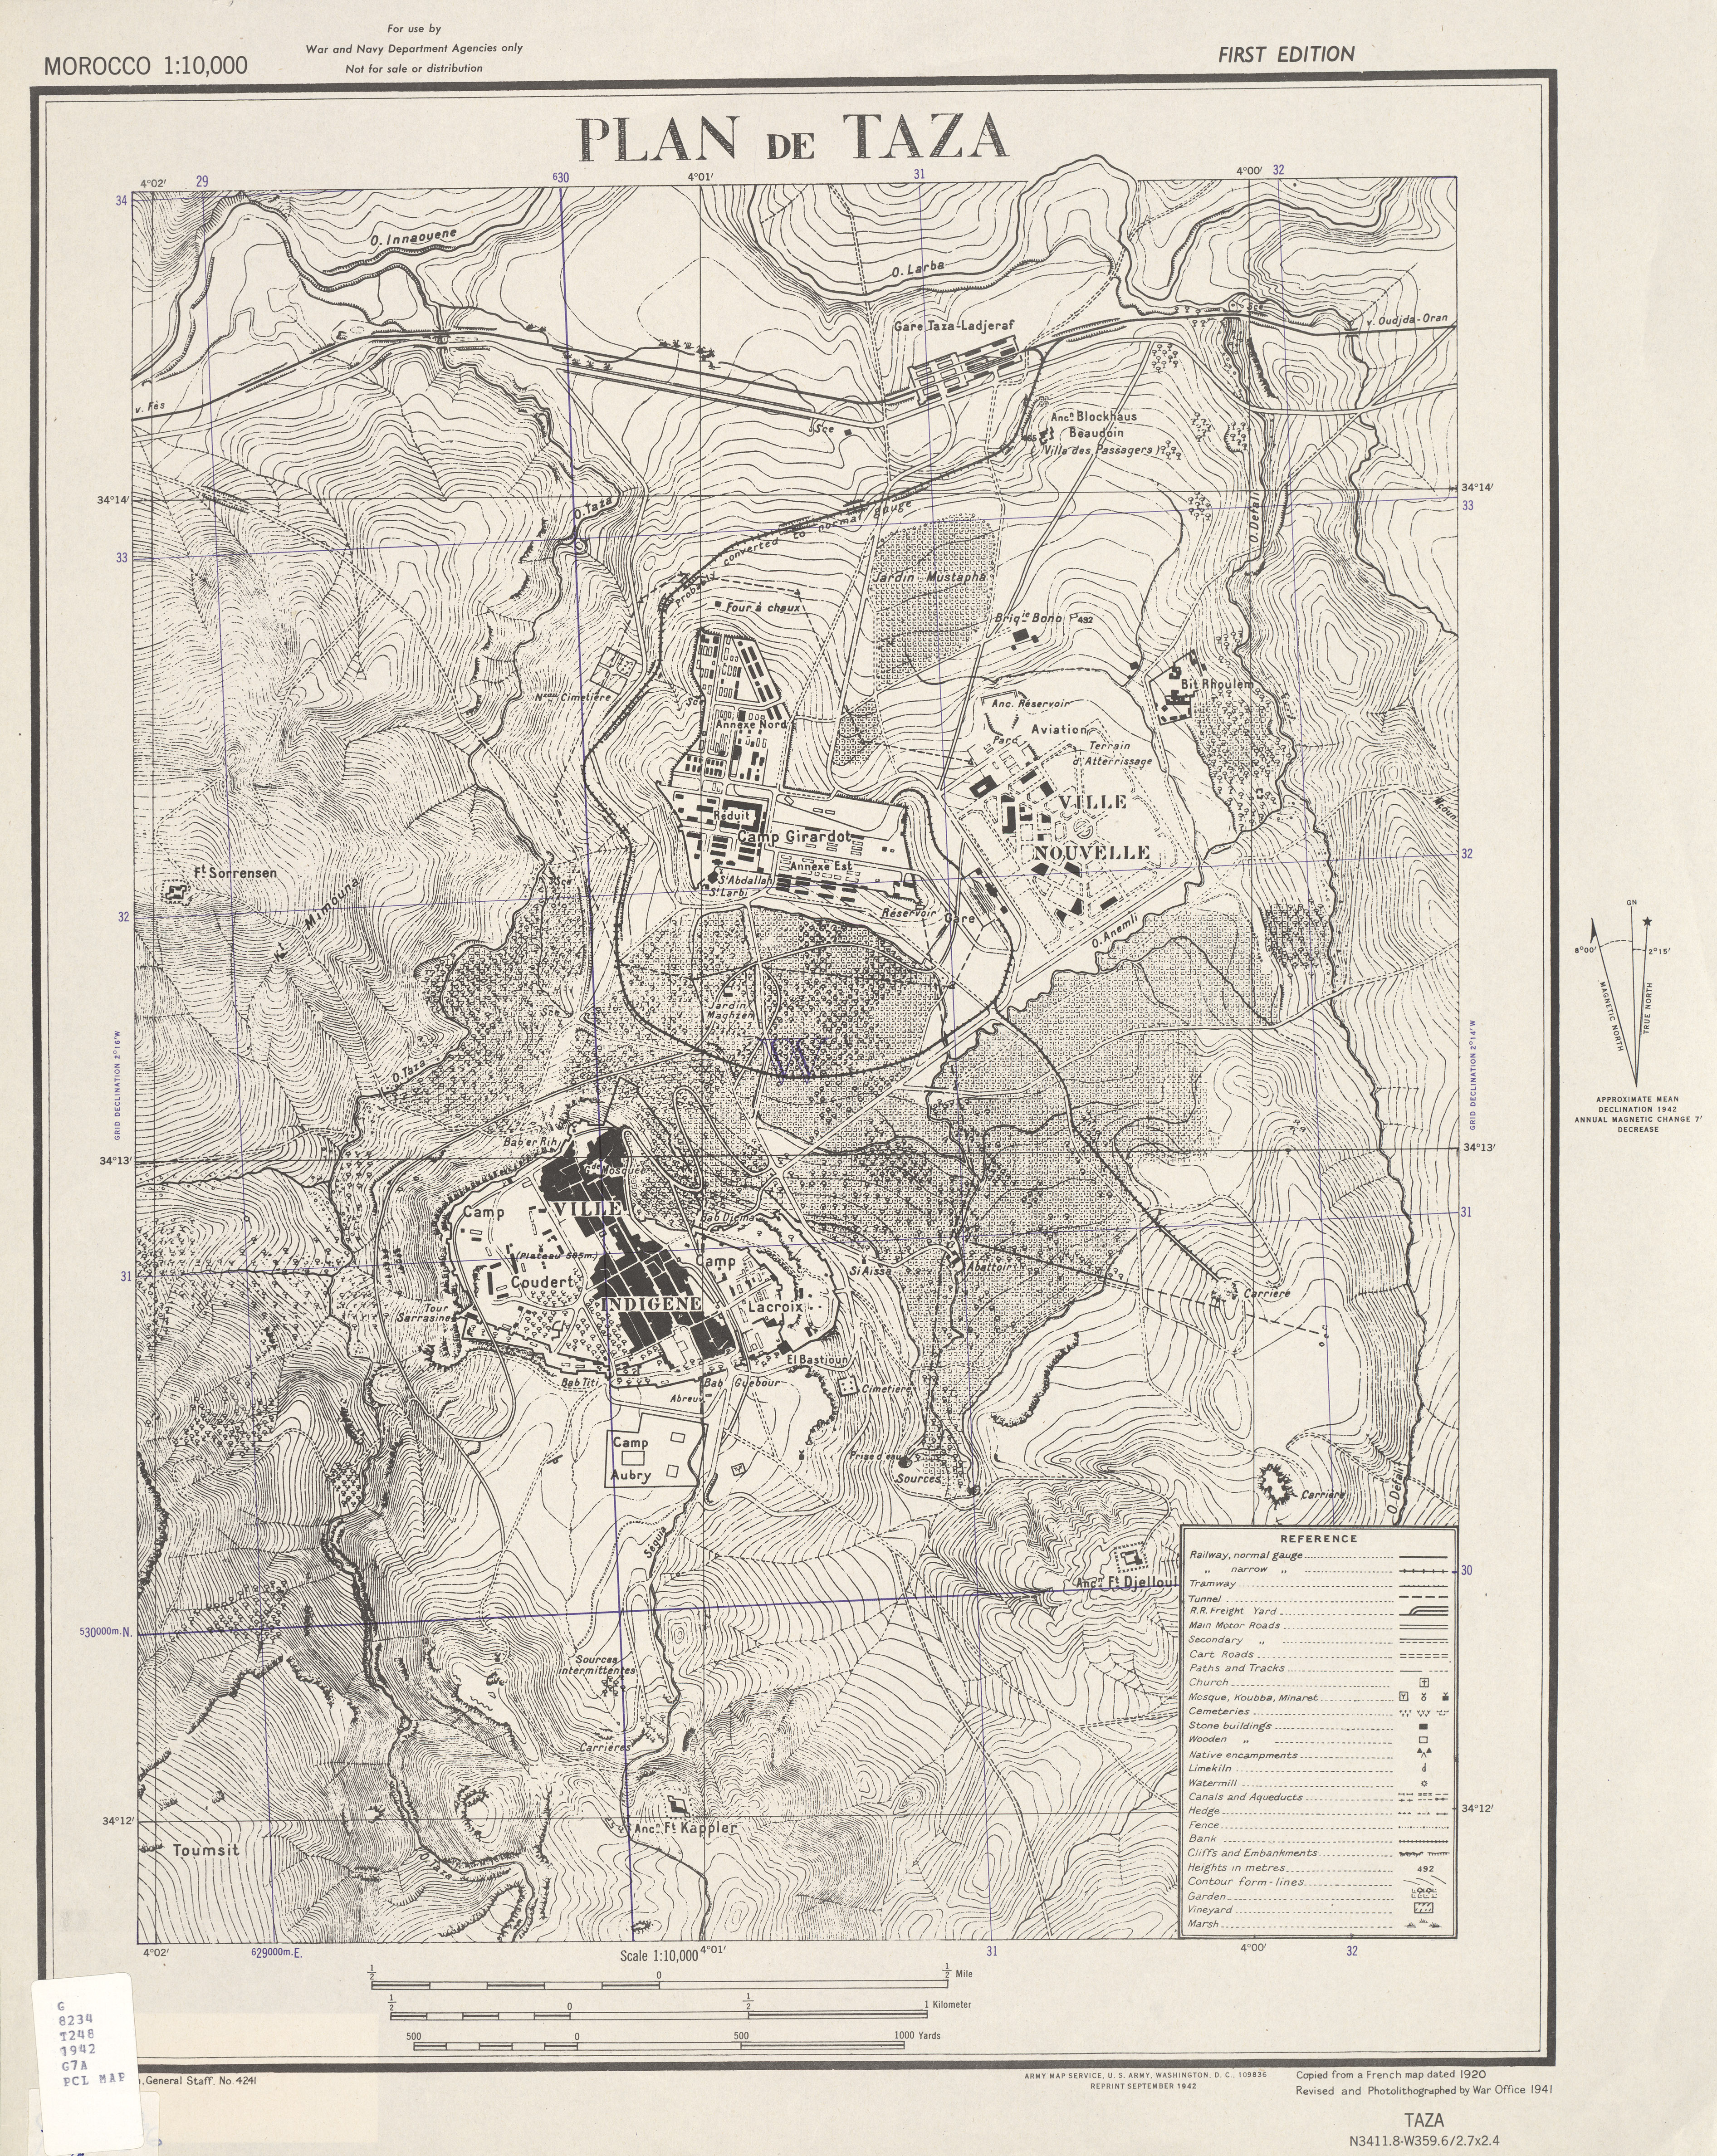 Mapa de la Ciudad de Taza, Marruecos 1942